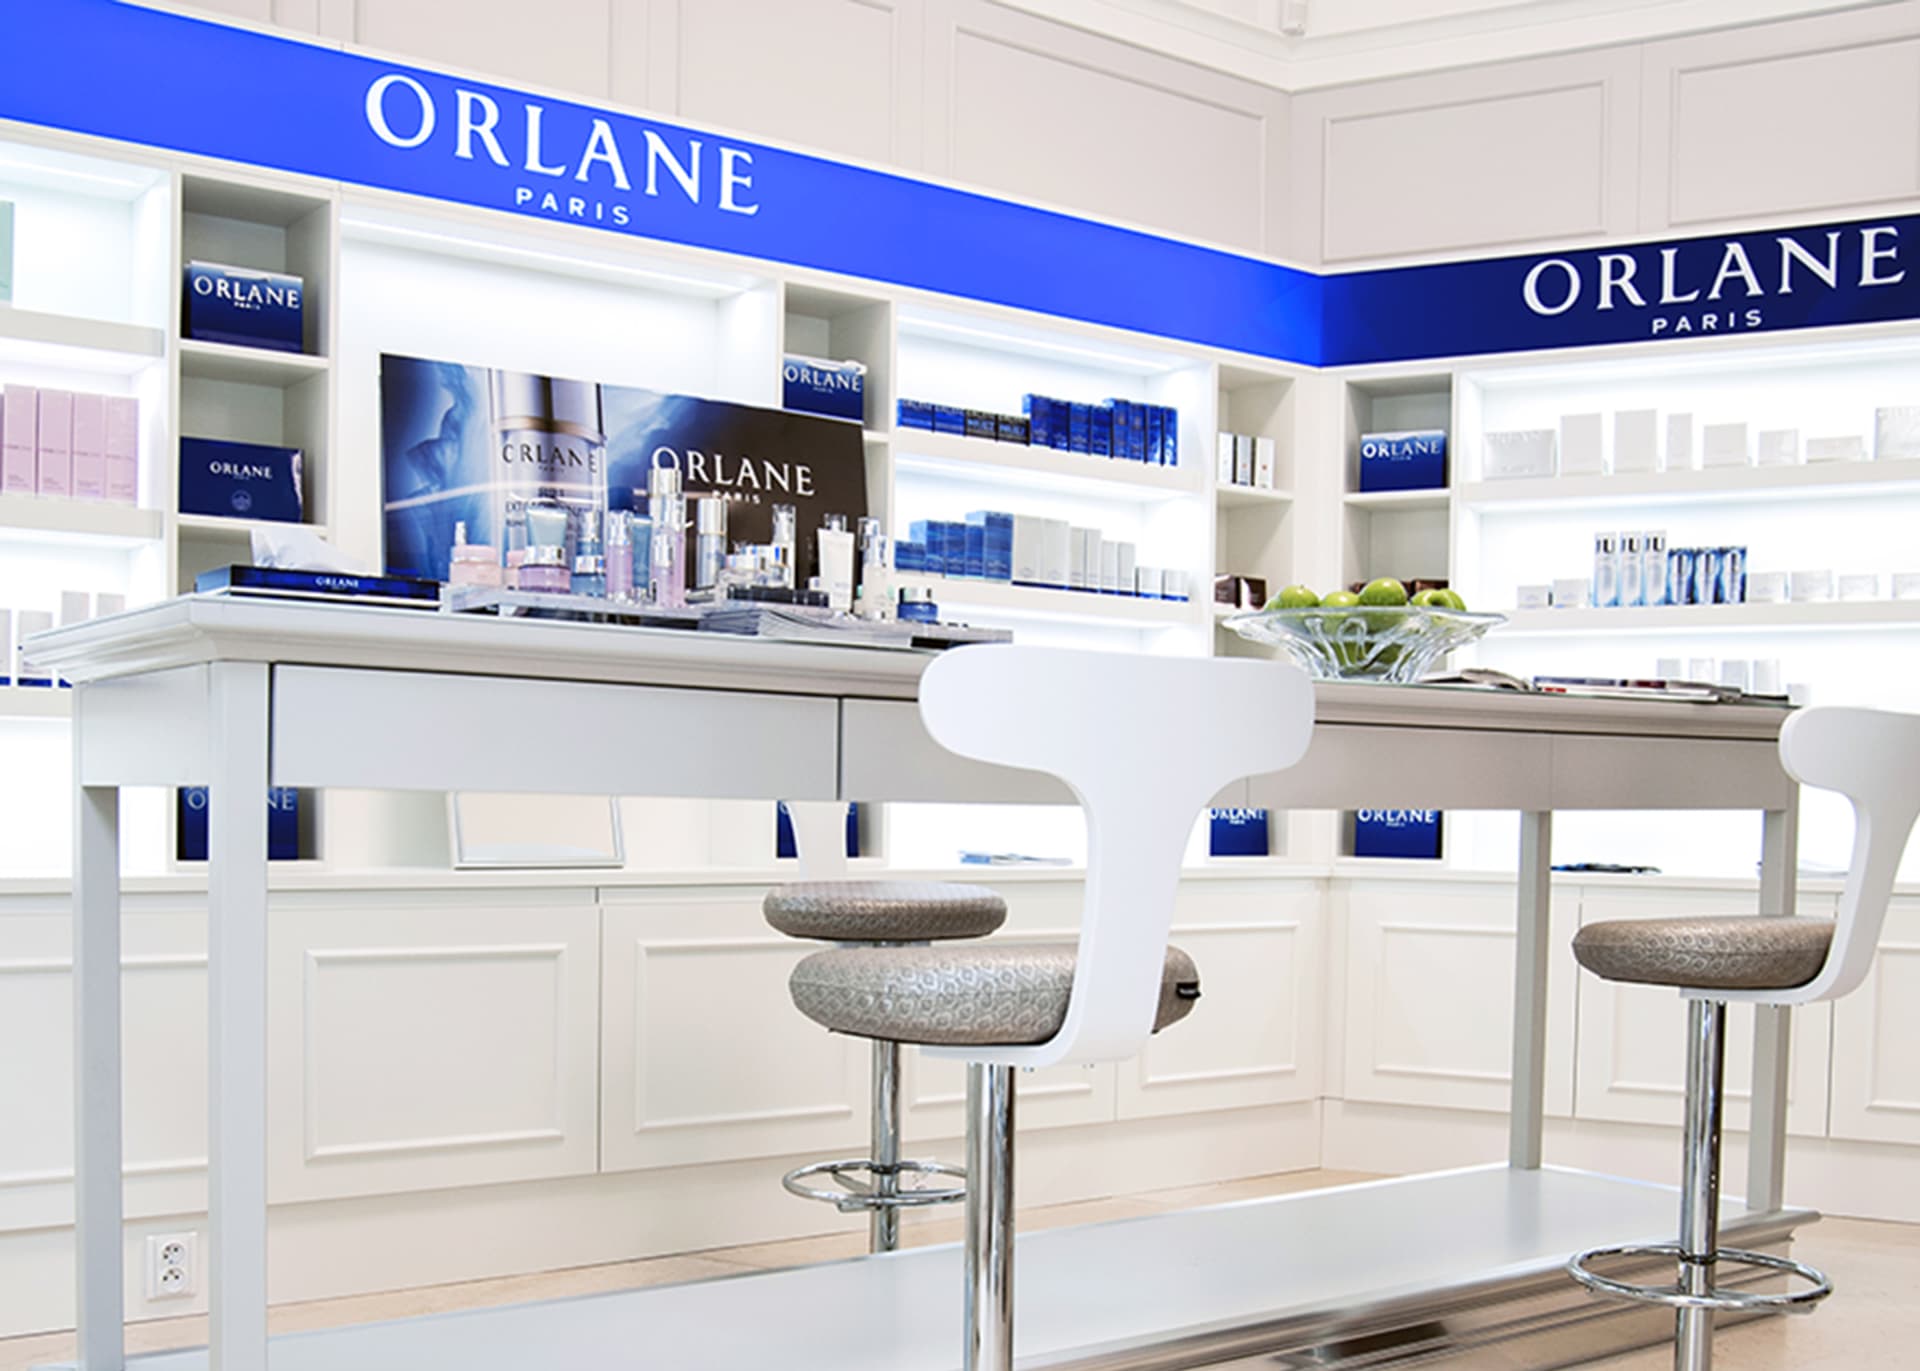 Nabídka značky Orlane je velmi široká a nachází se v různých cenových hladinách, takže si vybere snad úplně každý.